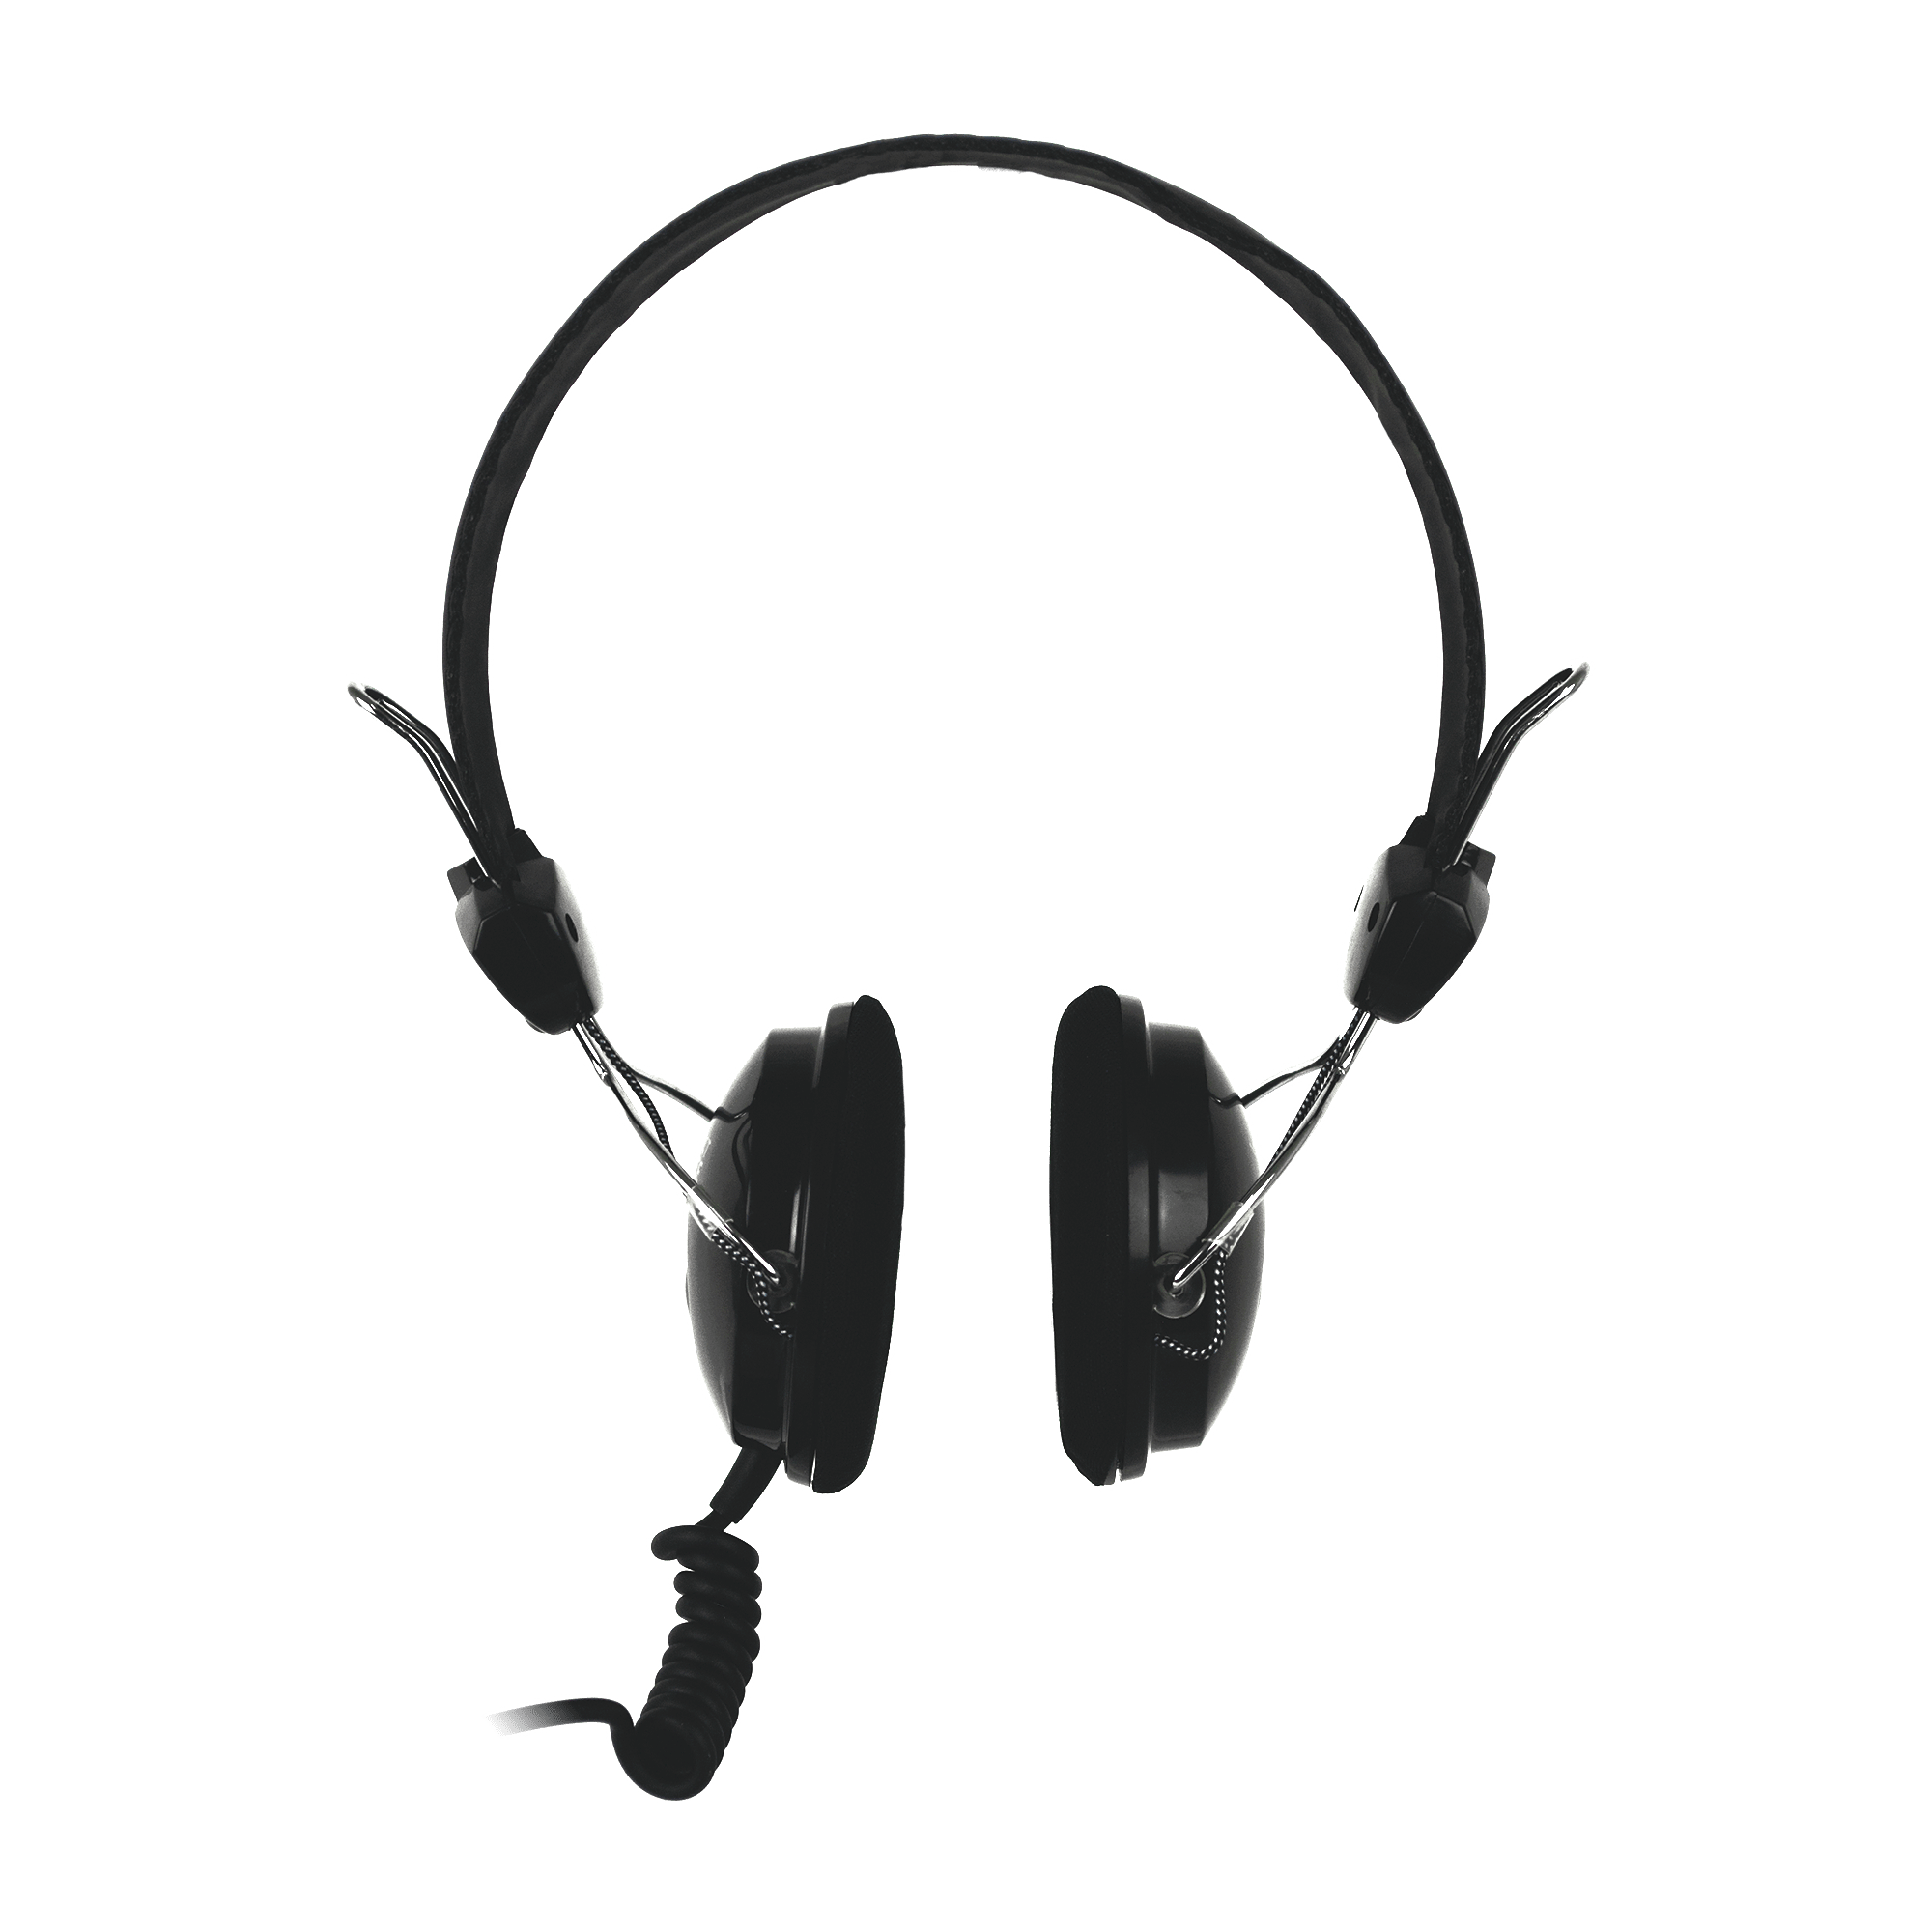 Audífonos Diadema ON-EAR 1 conector 3.5mm TRRS, Perfect Choice, PC-113171